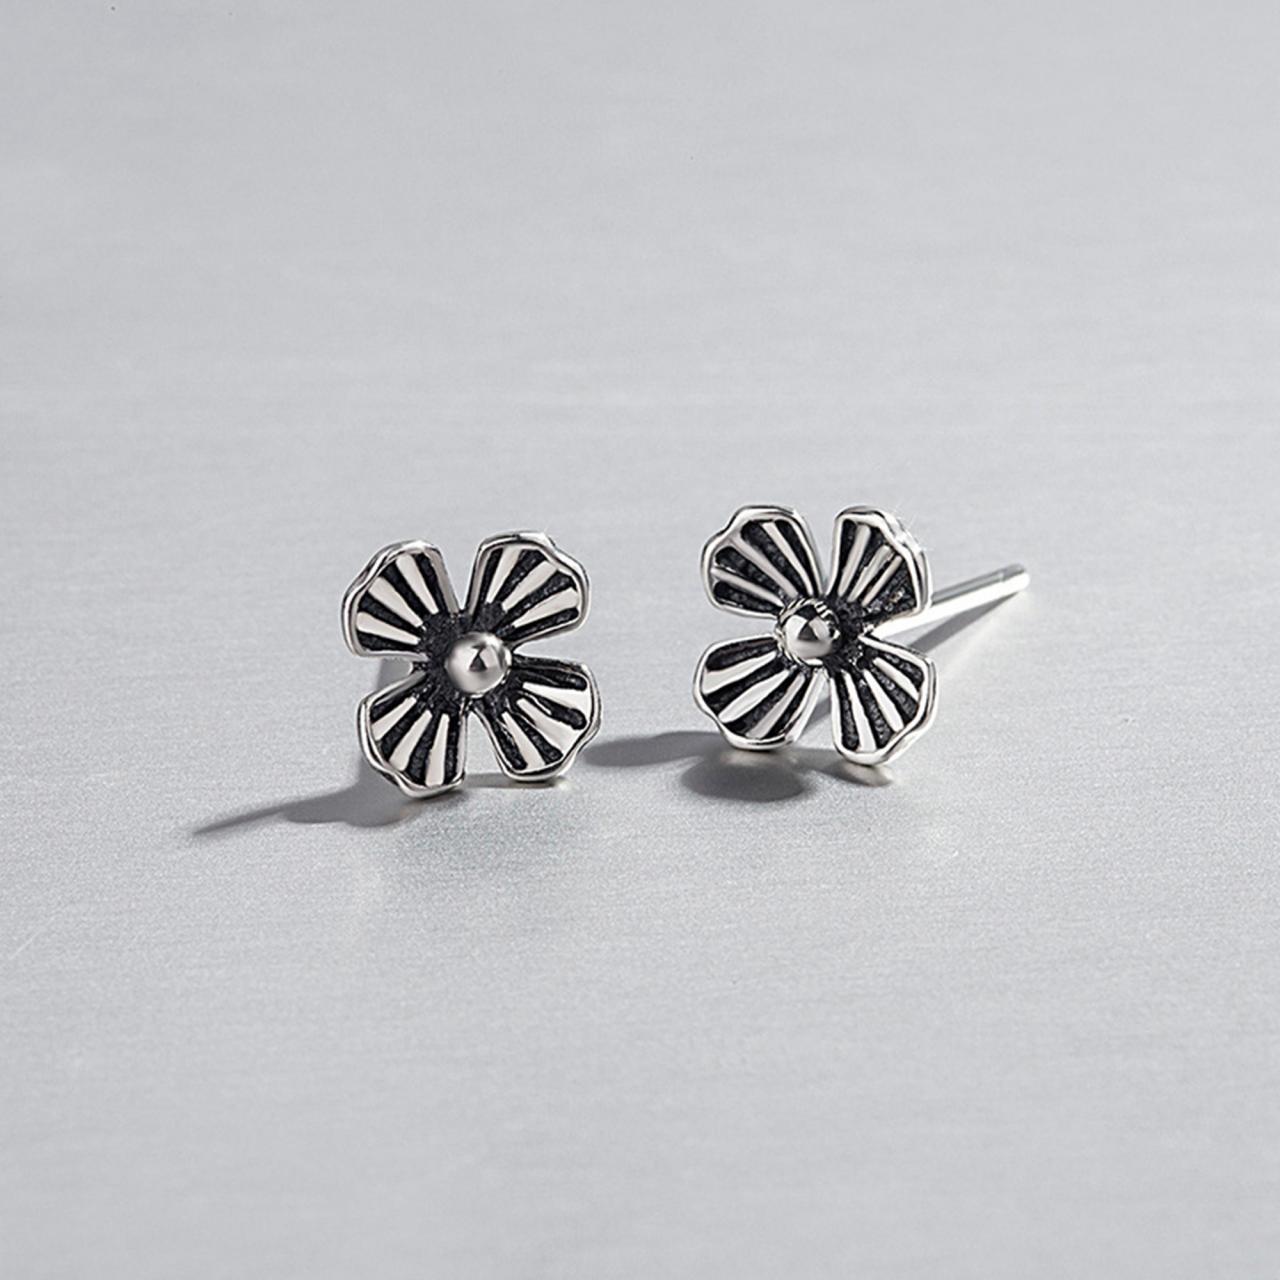 S925 Sterling Silver Vintage Flower Ear Studs, Flower Earrings, Flower Ear Studs, Earring Posts, Floral Ear Stud